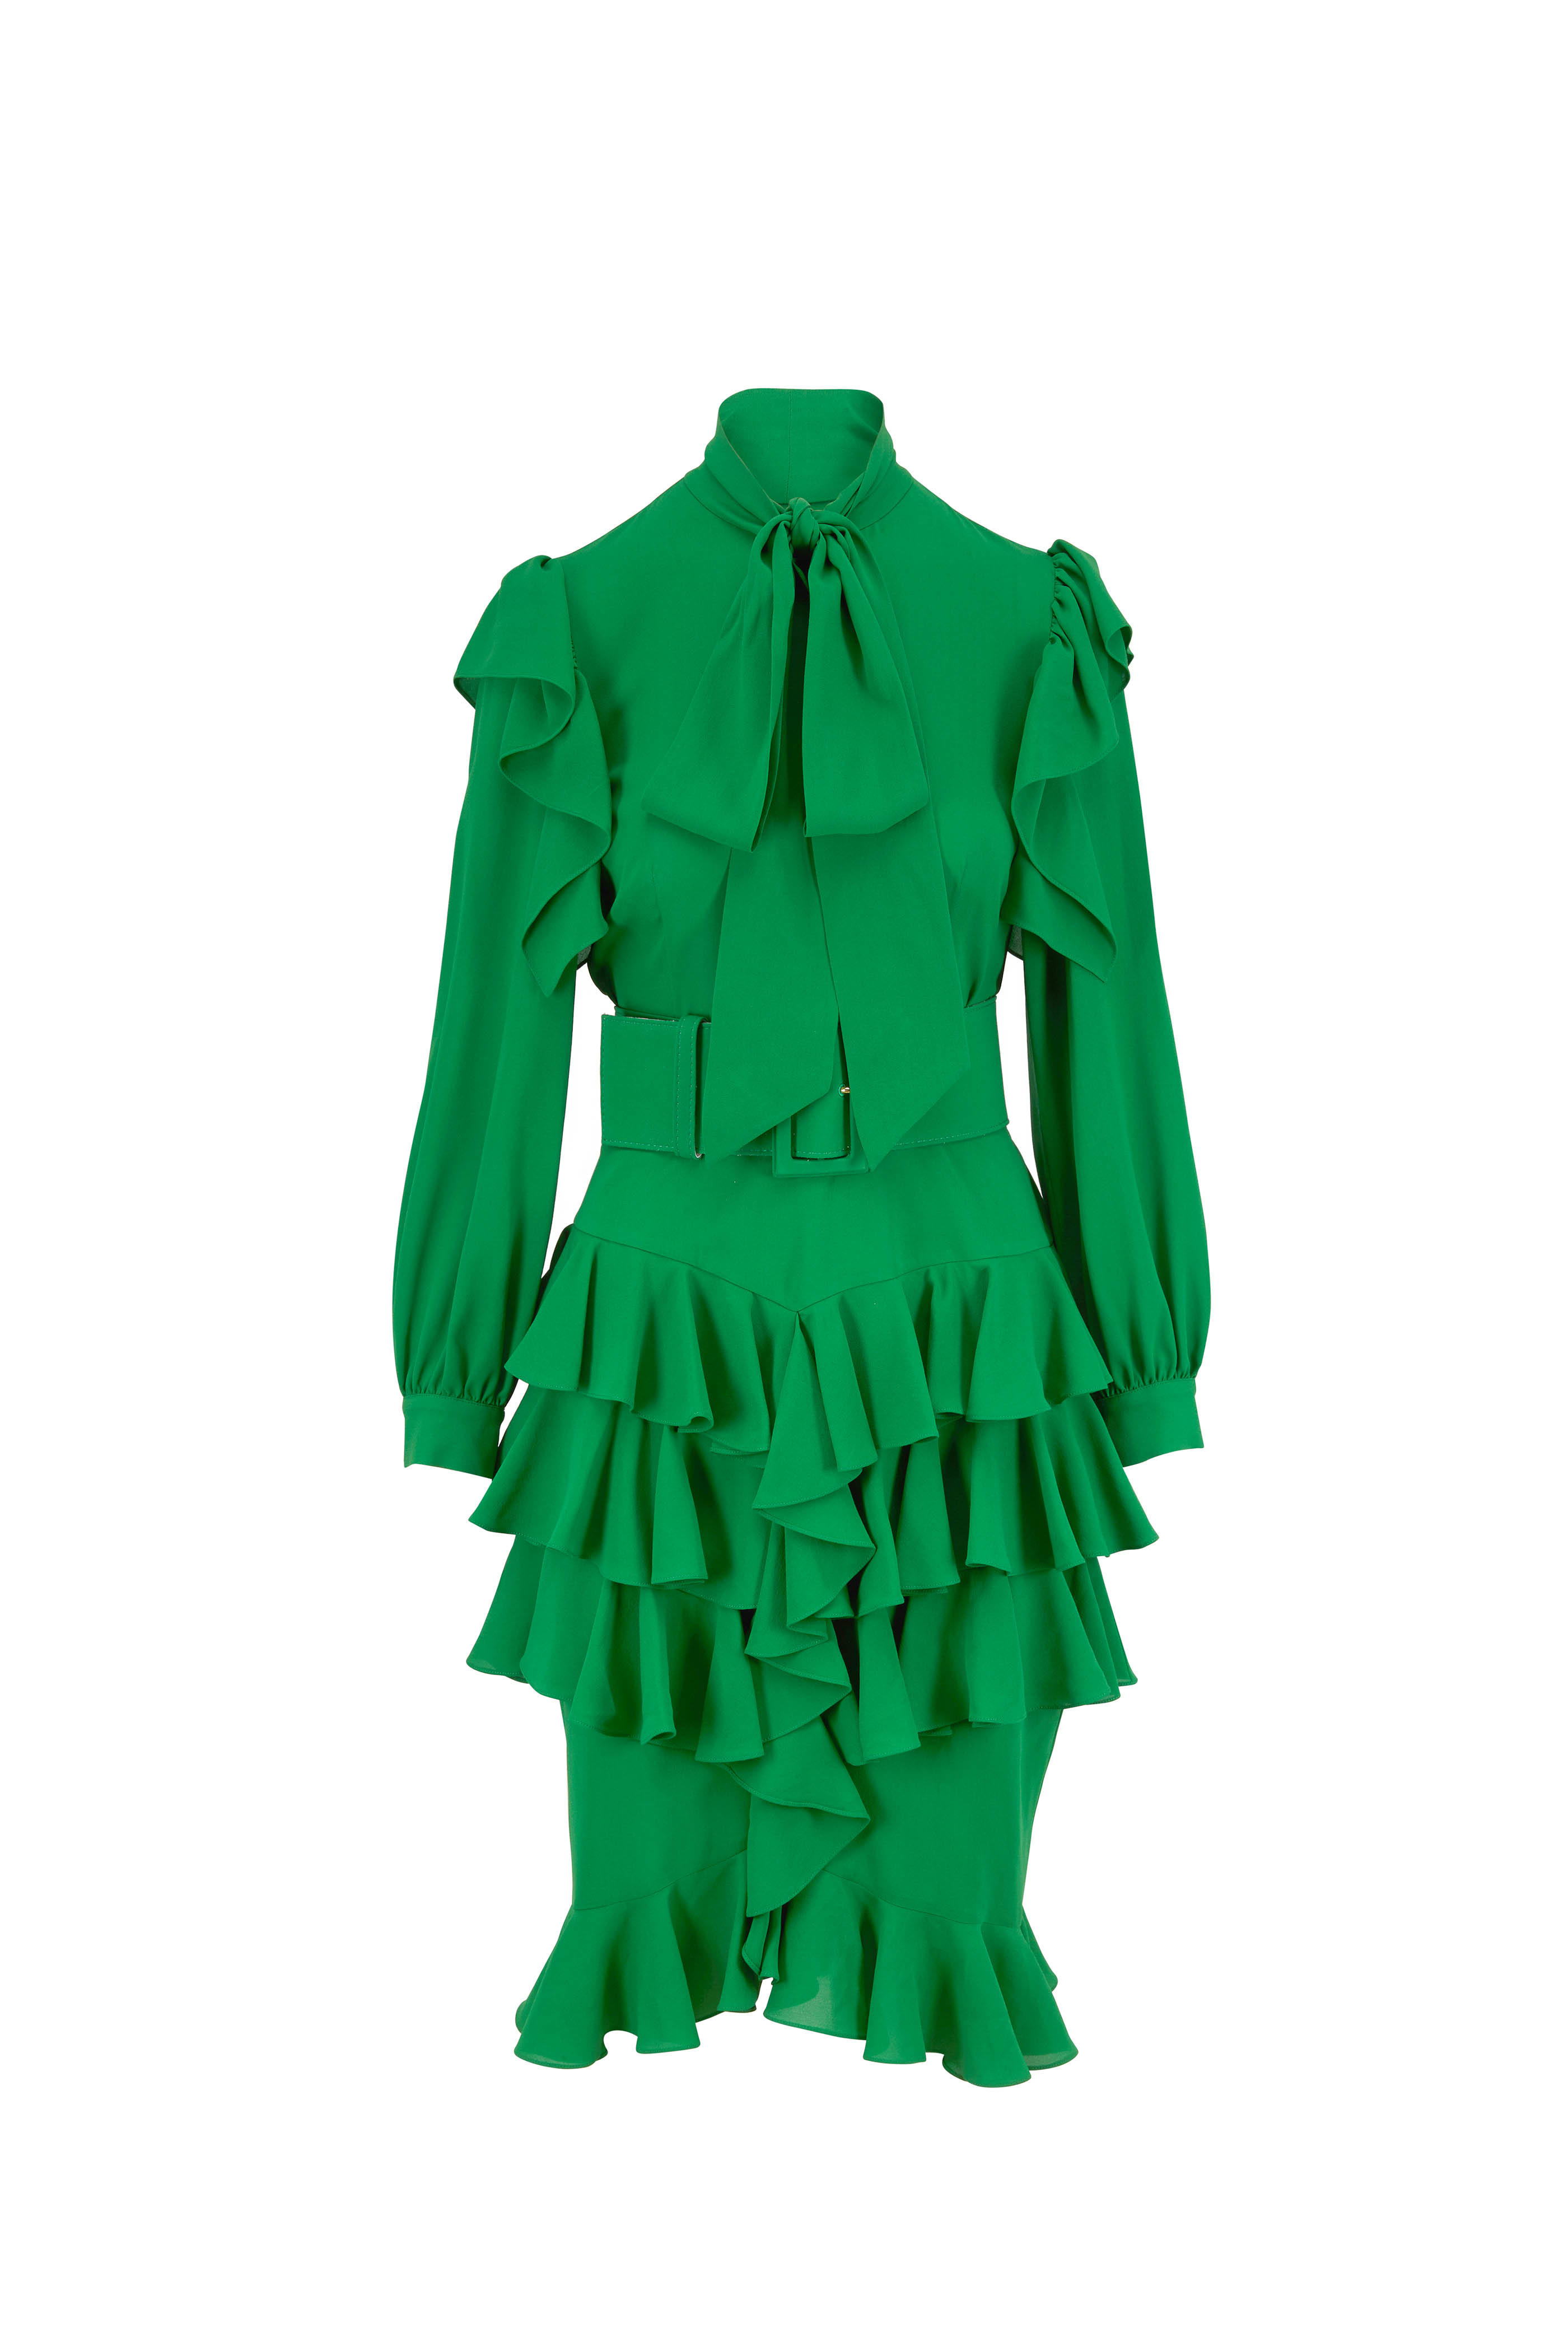 michael kors green dress